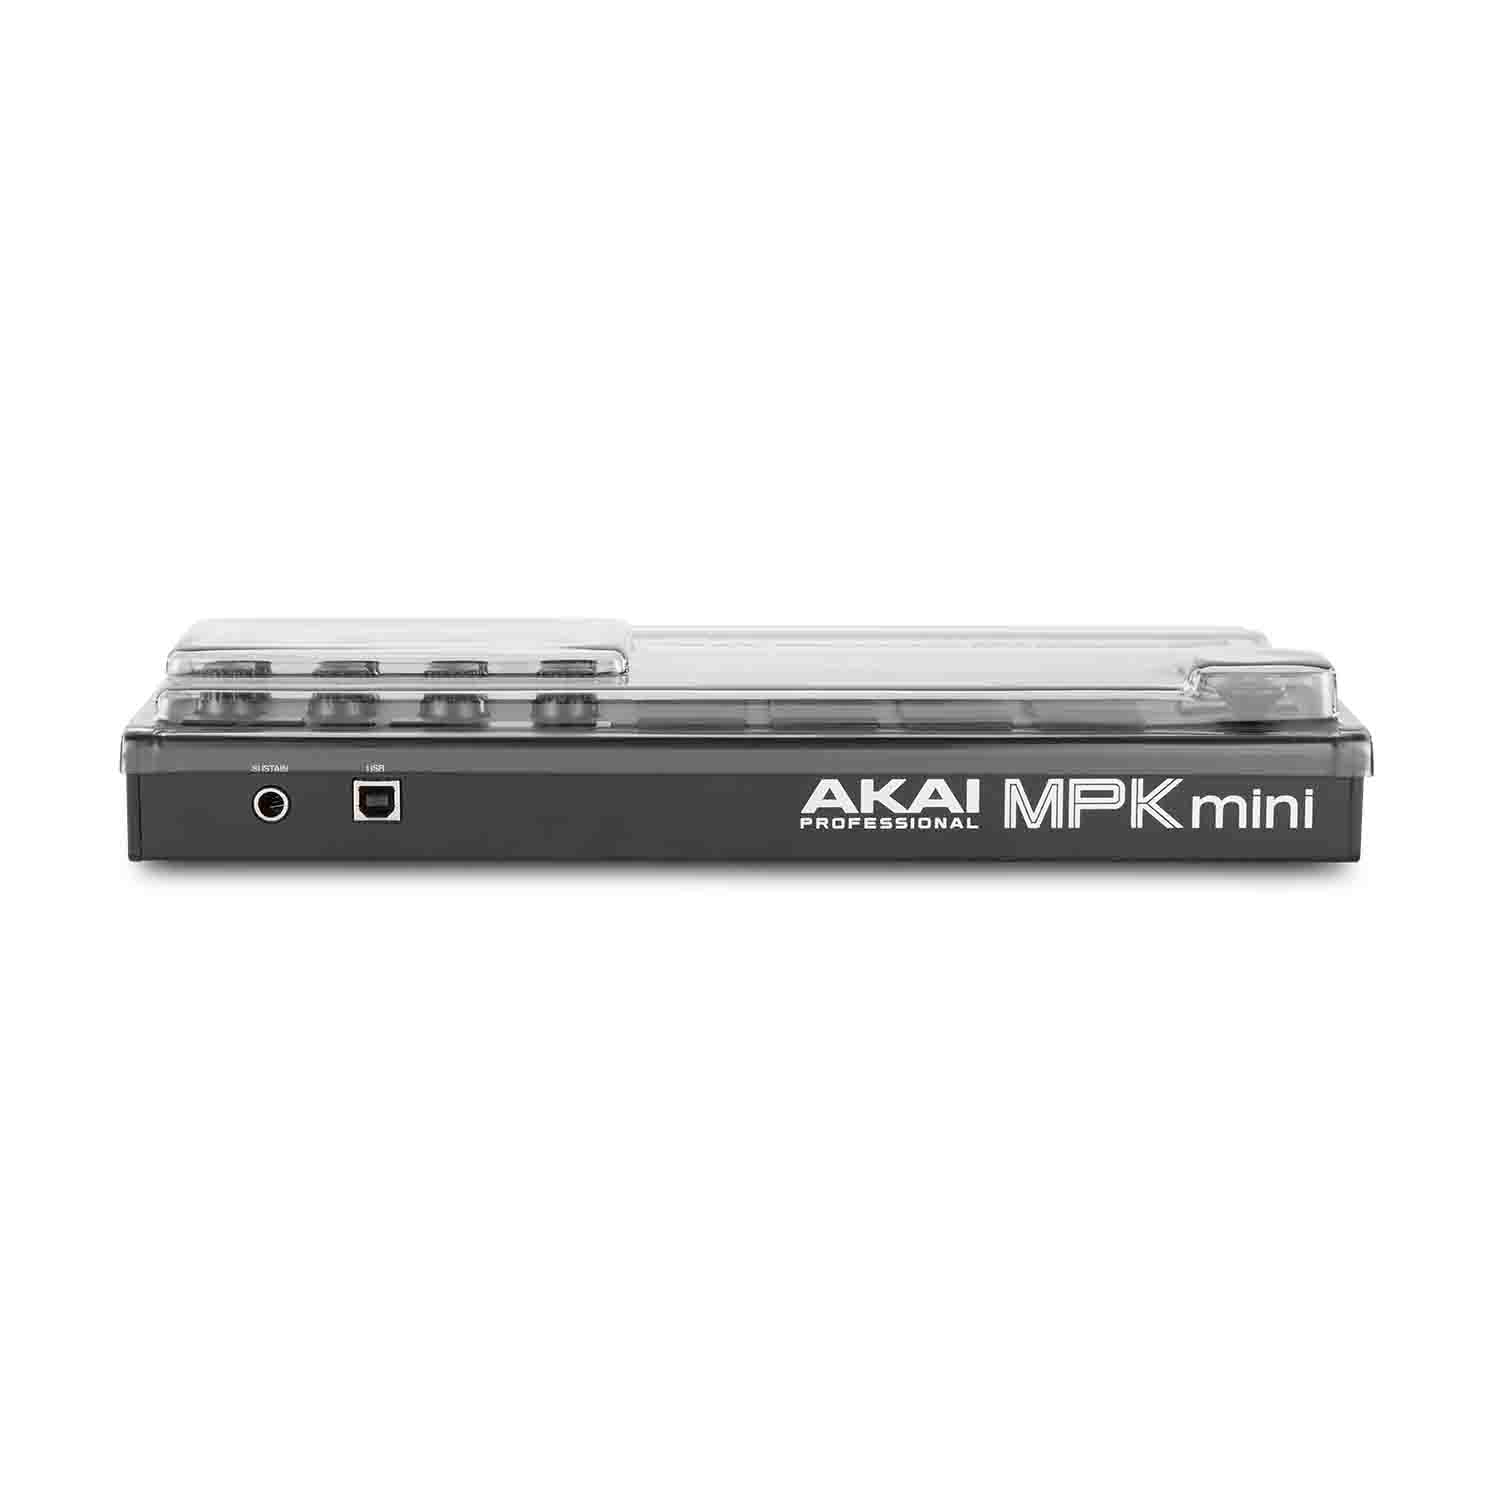 Decksaver DSLE-PC-MPKMINIMK3 Protection Cover for LE Akai Pro MPK Mini MK3 Controller - Hollywood DJ